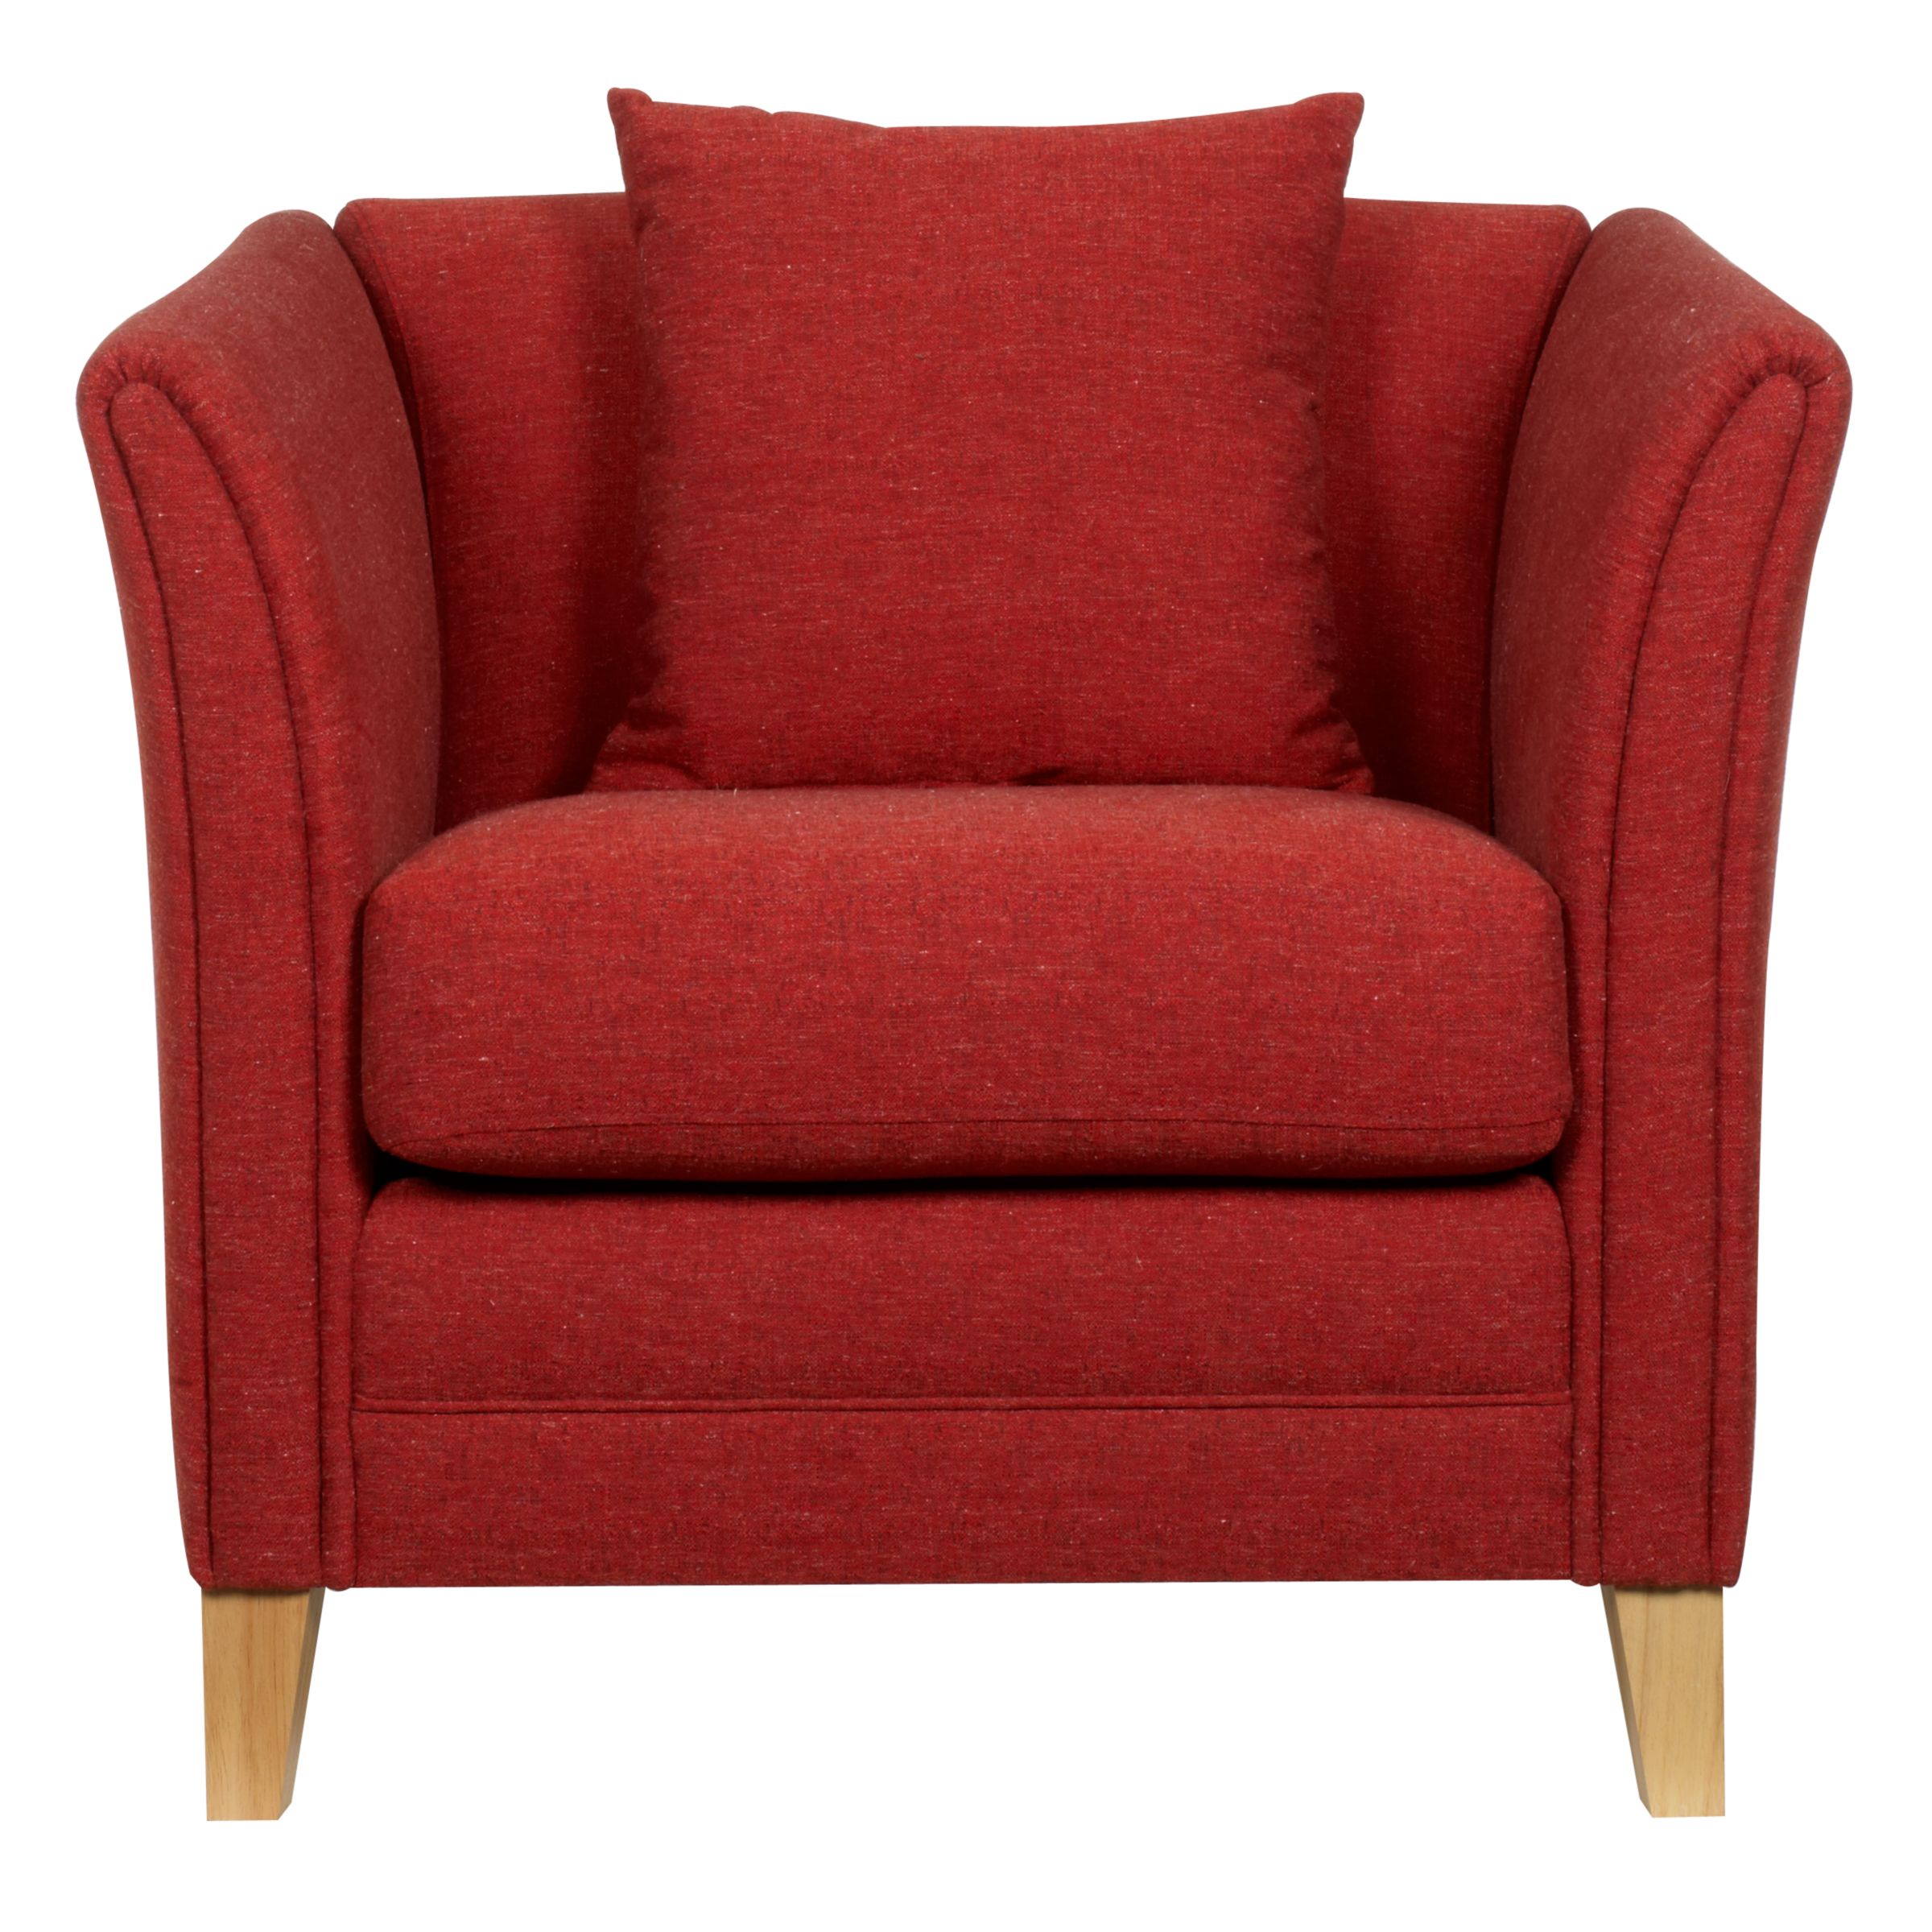 John Lewis Maja Chair, Red at JohnLewis